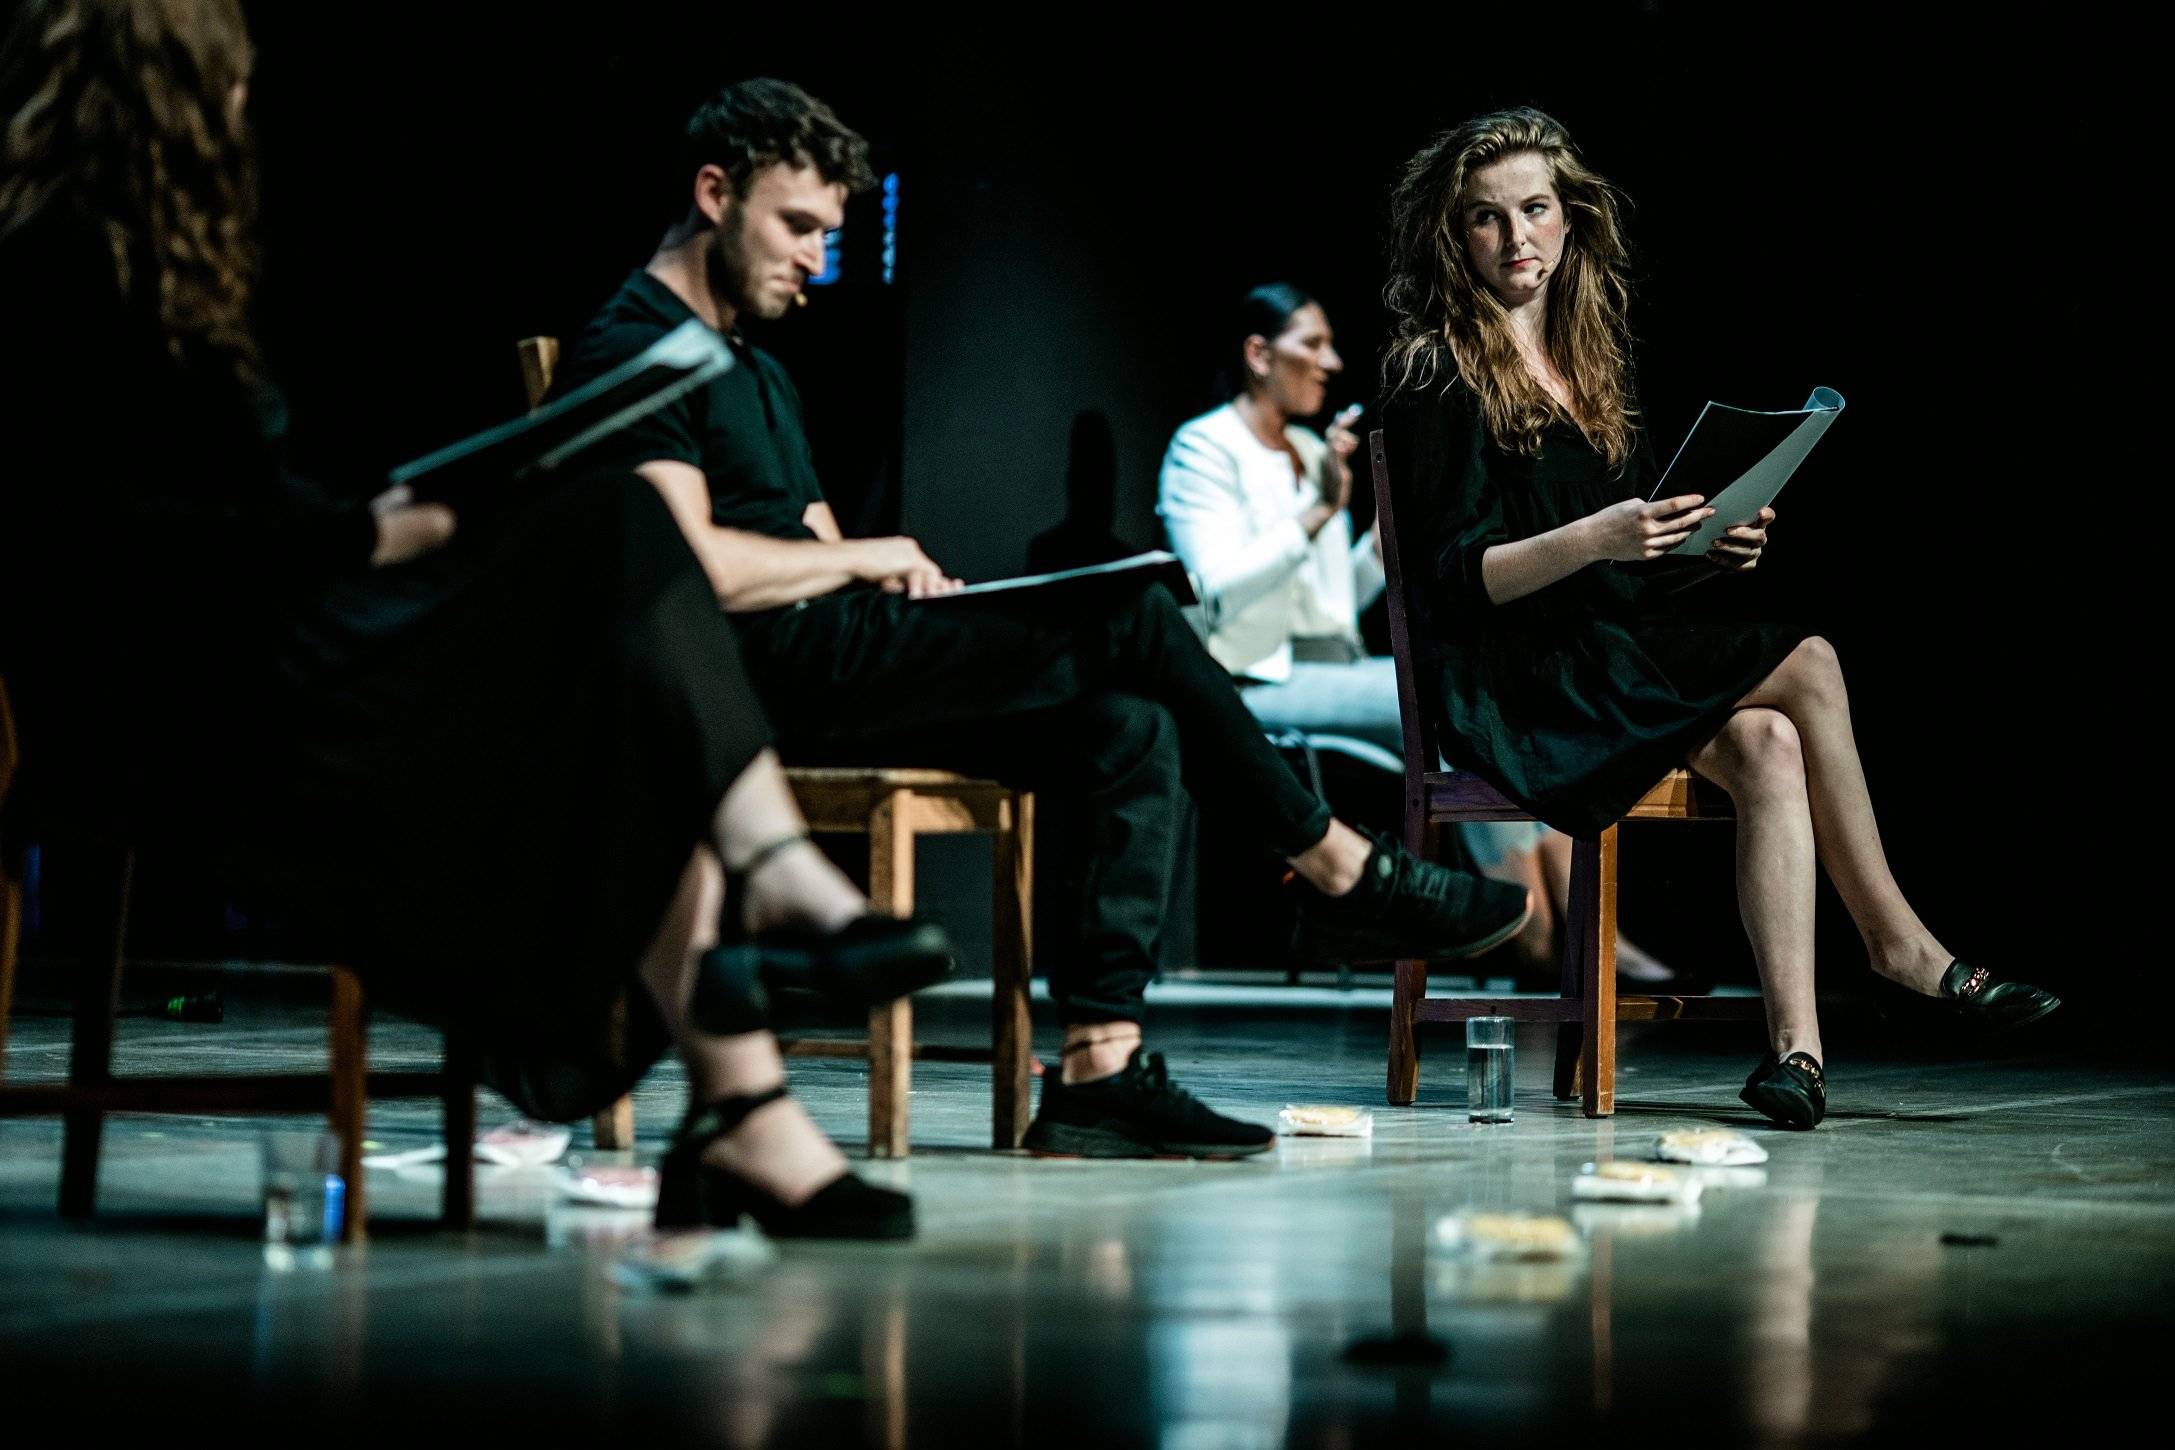 Aktoirzy czytają tekst na scenie. na podłodze leżą pączki